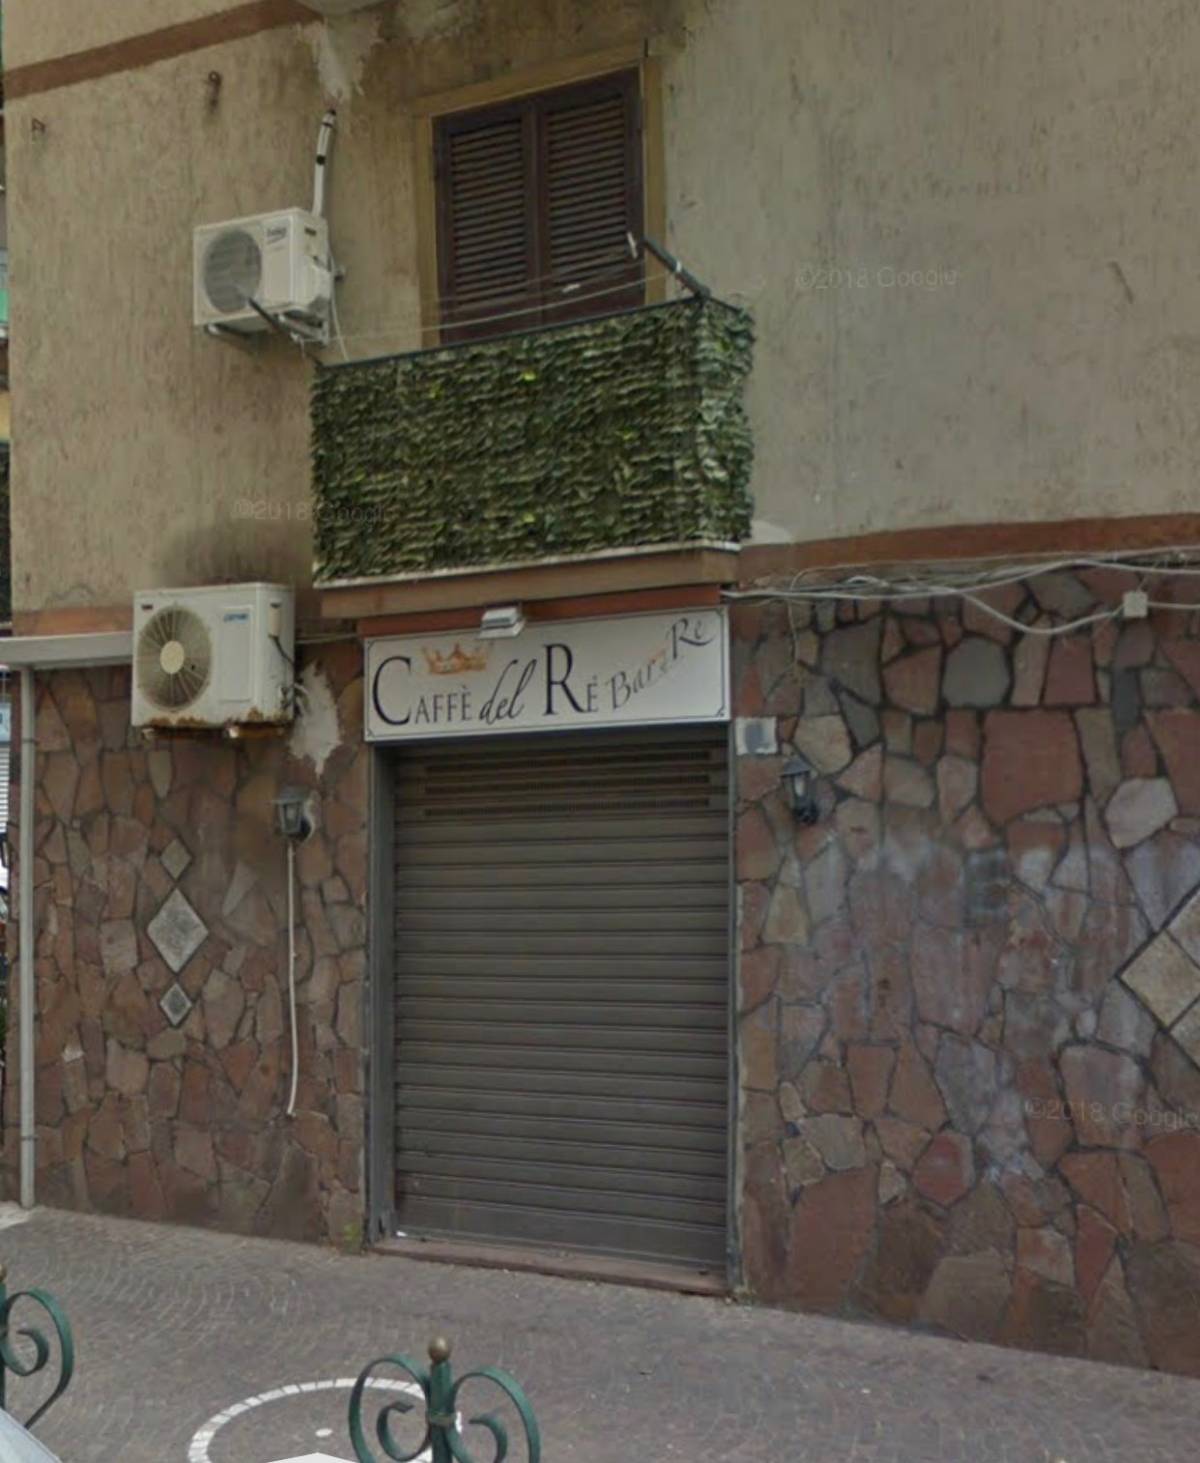 Bomba carta esplode nella notte contro un bar a San Giovanni a Teduccio